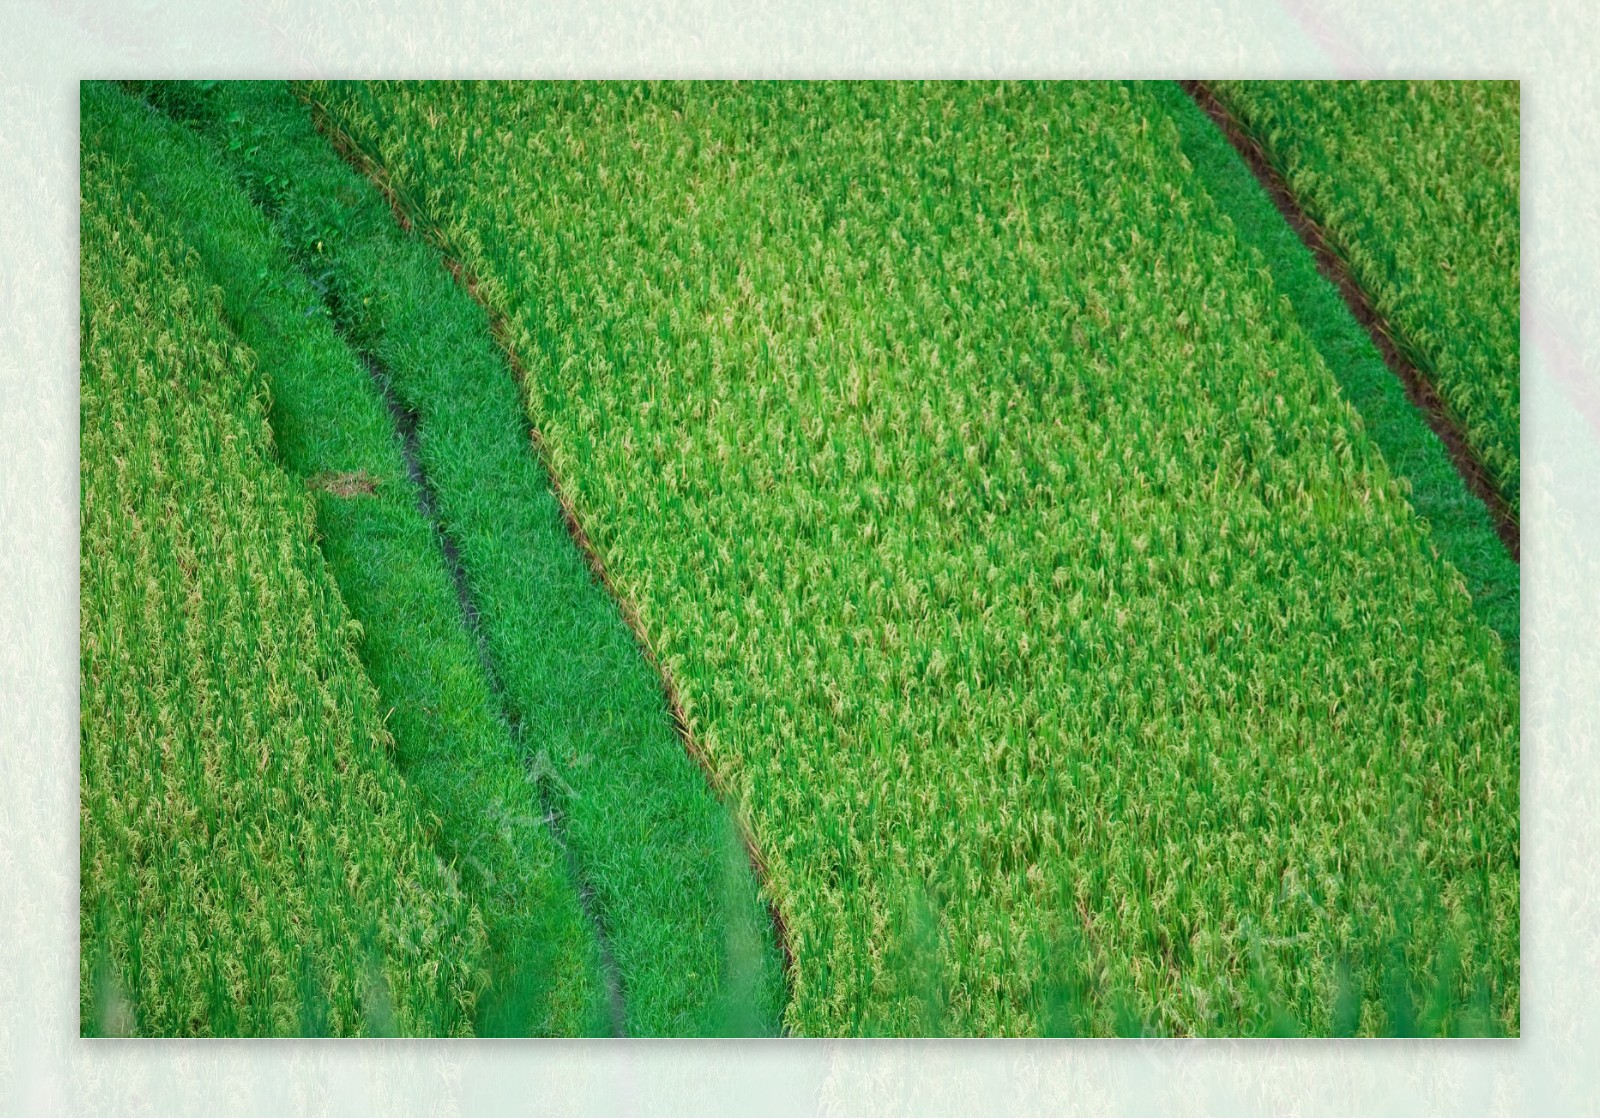 农村水稻田图片